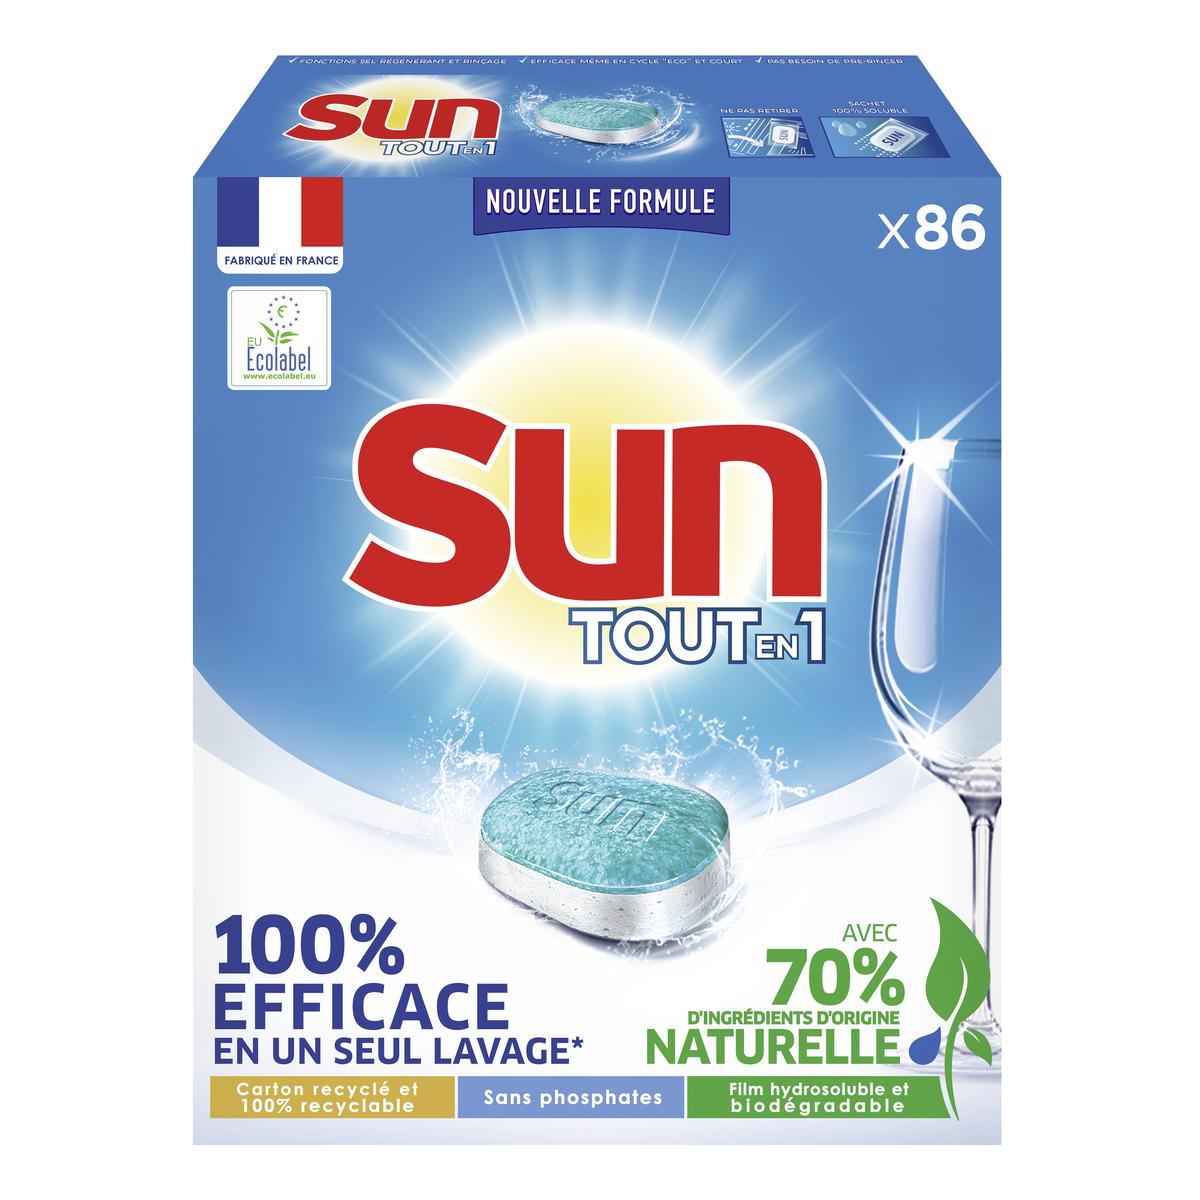 Boite de 90 tablettes lave vaisselle Sun Tout en 1 (via 15.02€ sur